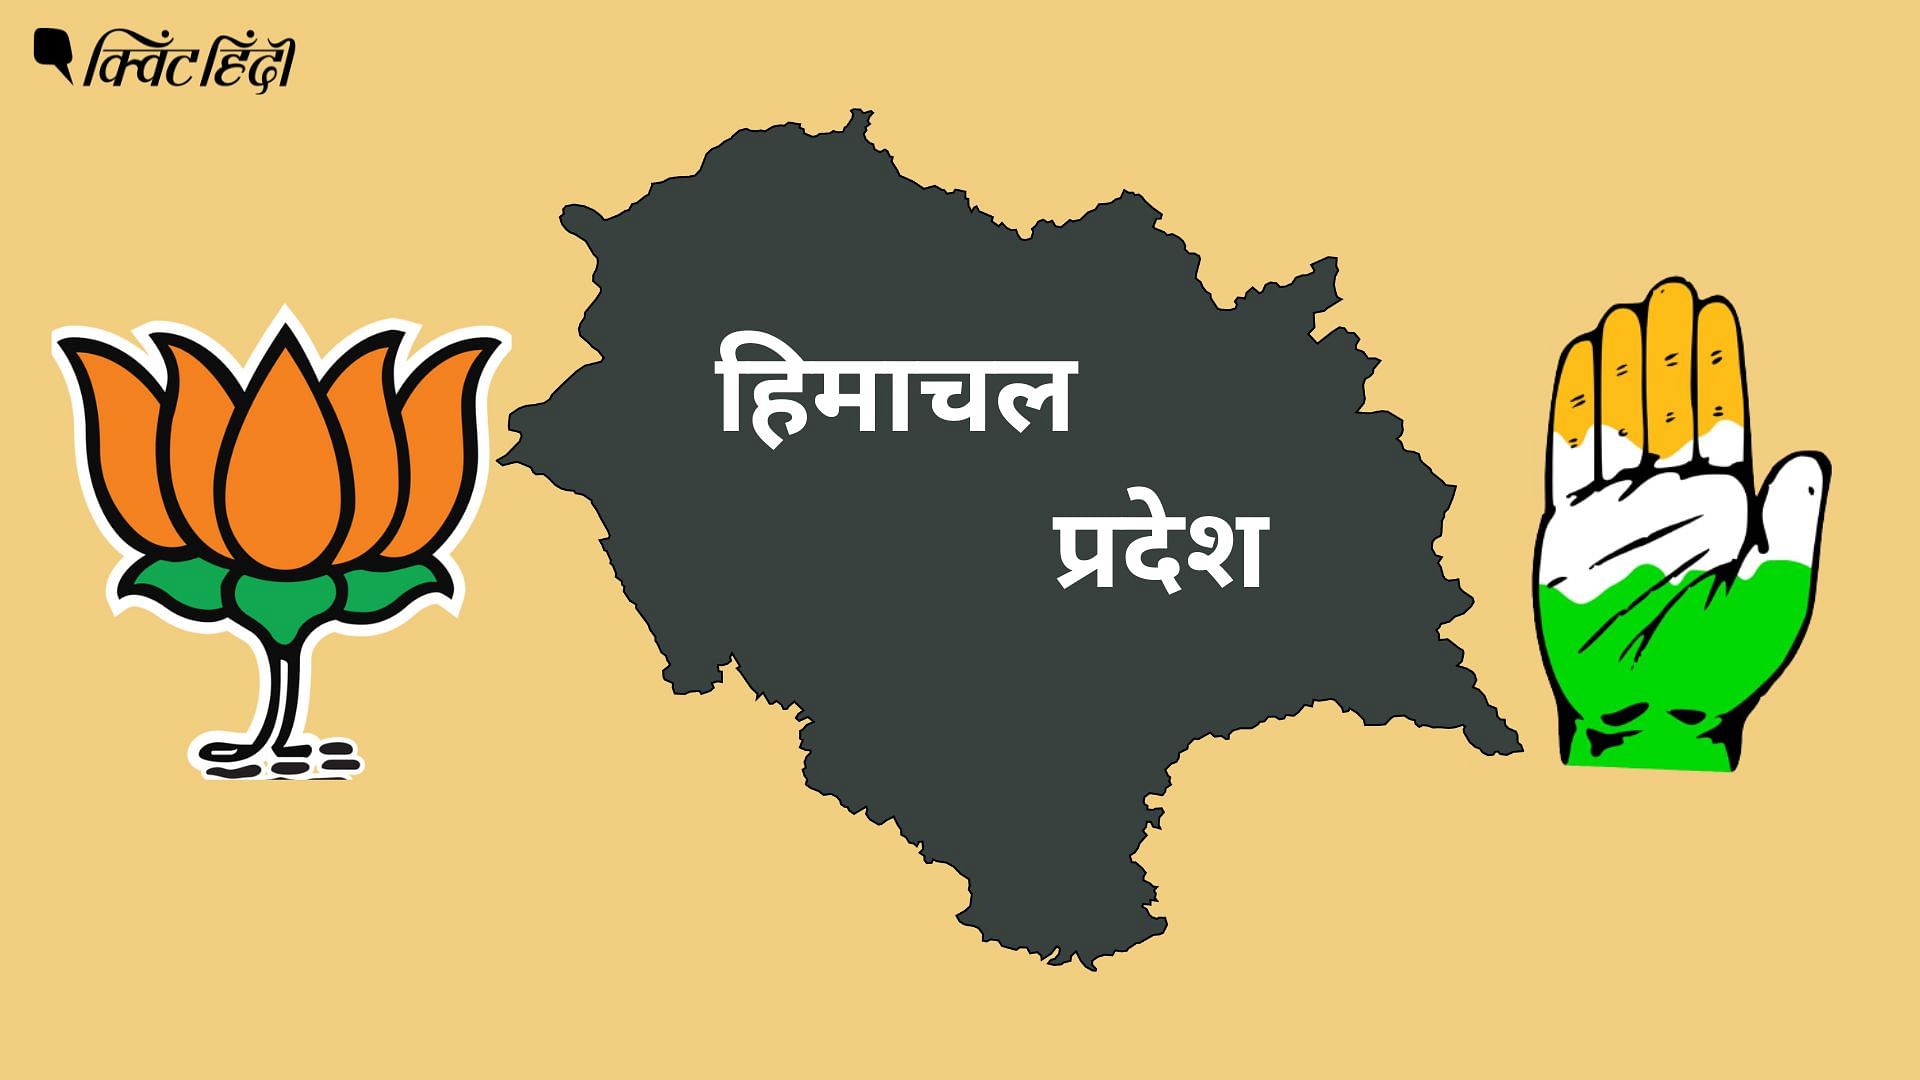 <div class="paragraphs"><p>Himachal Elections: चुनाव में हाटी समुदाय महत्वपूर्ण, BJP-कांग्रेस पर क्या असर?</p></div>